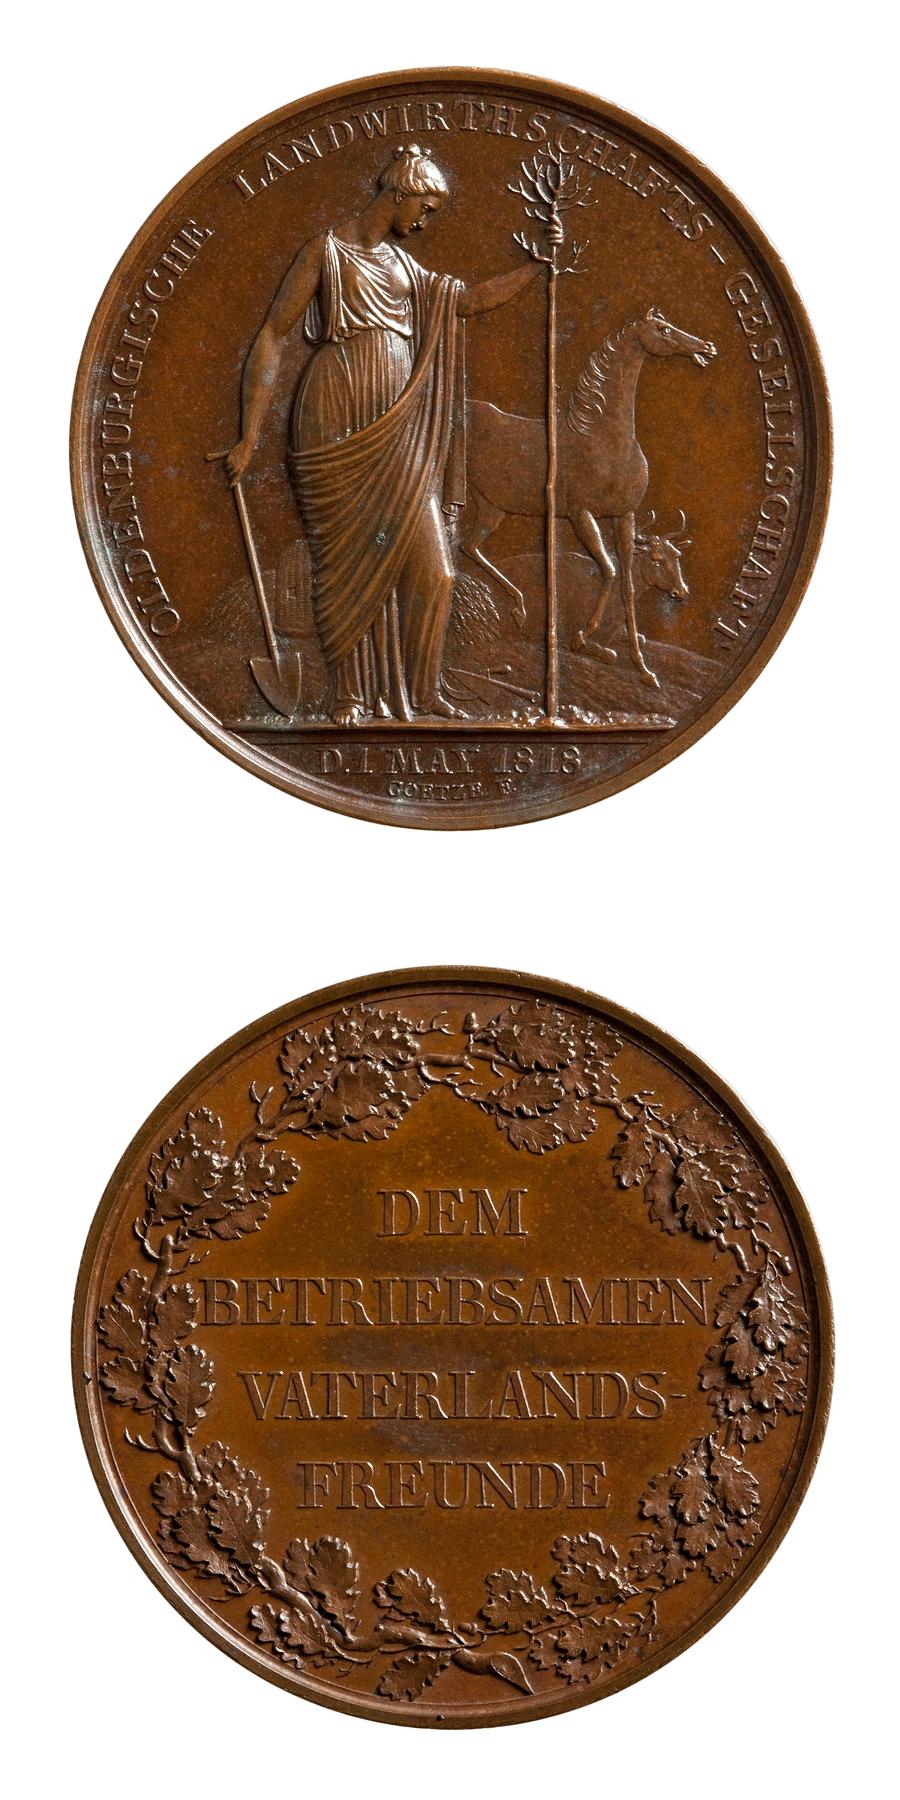 Medaljens forside: Landbruget planter et træ. Medaljens bagside: Egekrans og inskription, F88